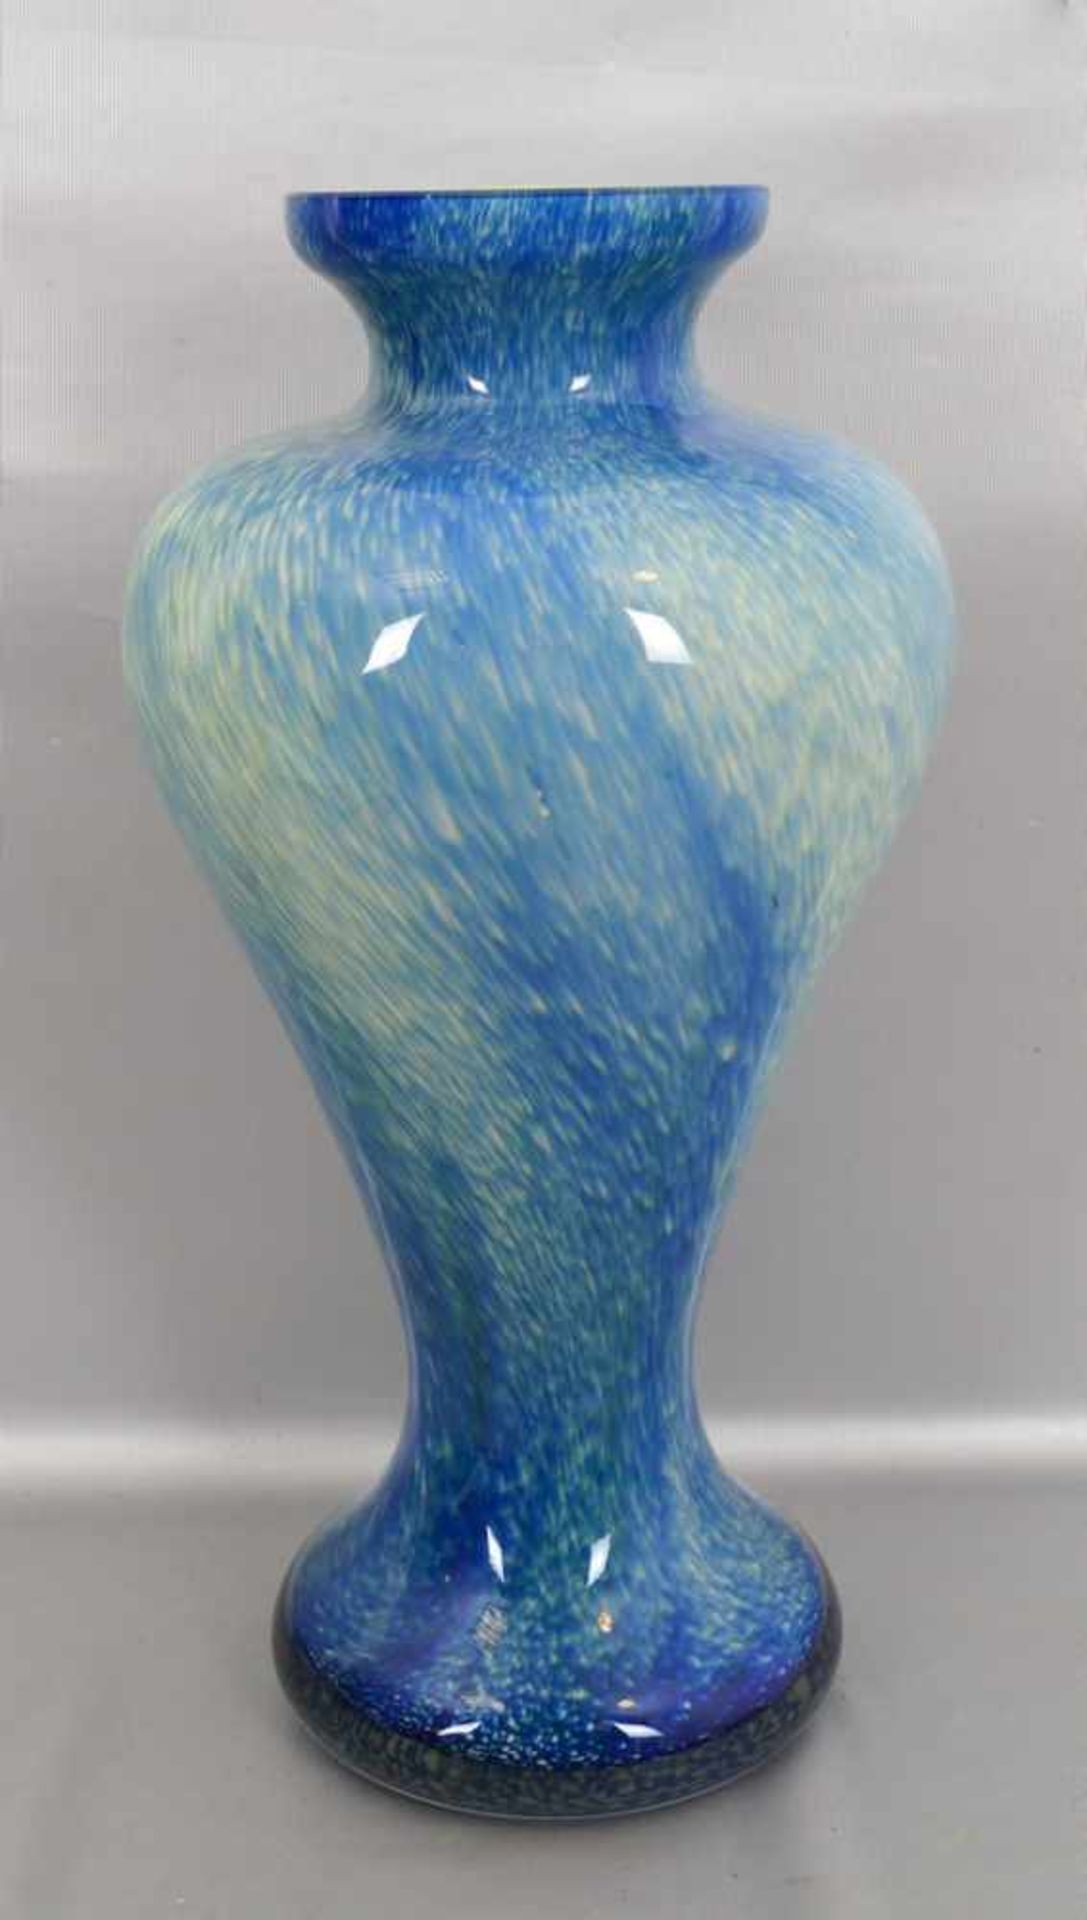 Vasefarbl. Glas, rund, gebaucht, mit blau/gelbem Verlauf, H 45 cm, FM Murano, 70er Jahre